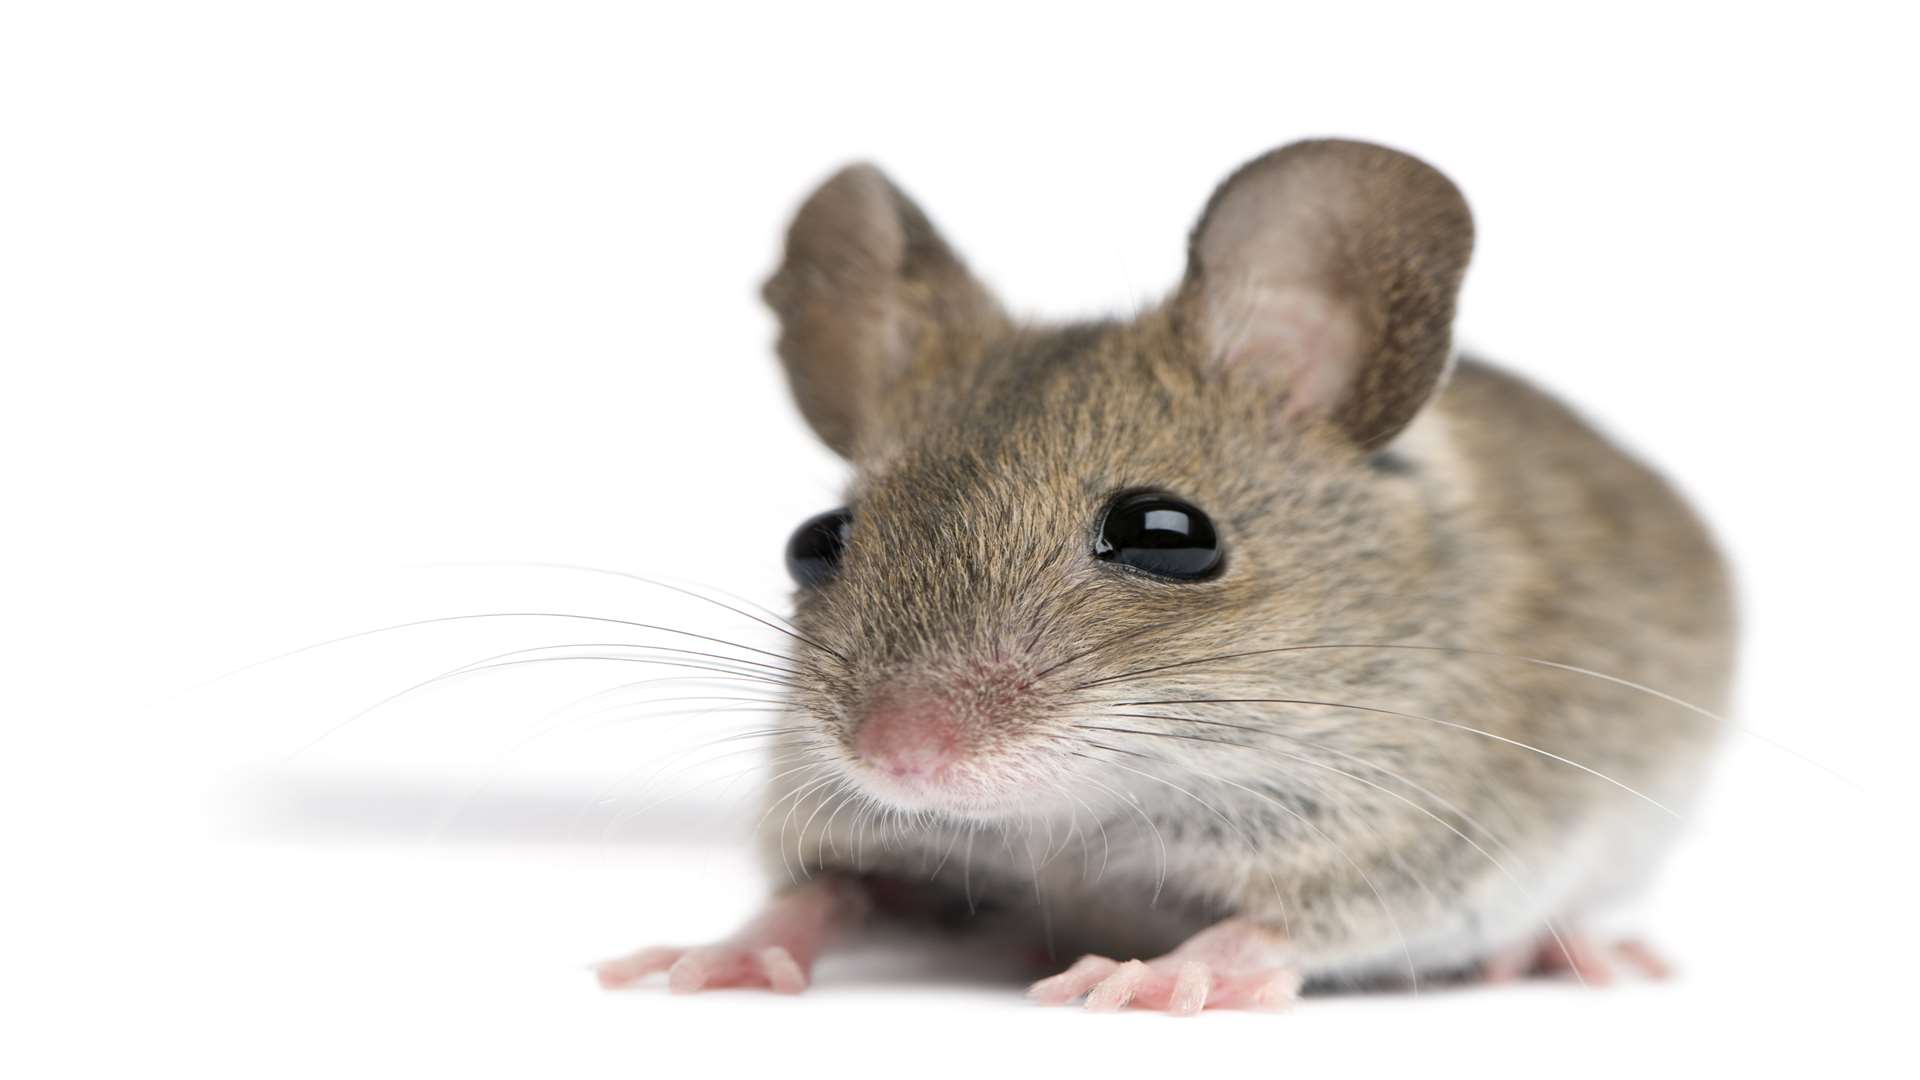 Акомис иглистая мышь. Мышата. Мышь PNG. Игольчатая мышь. Машь как правильно